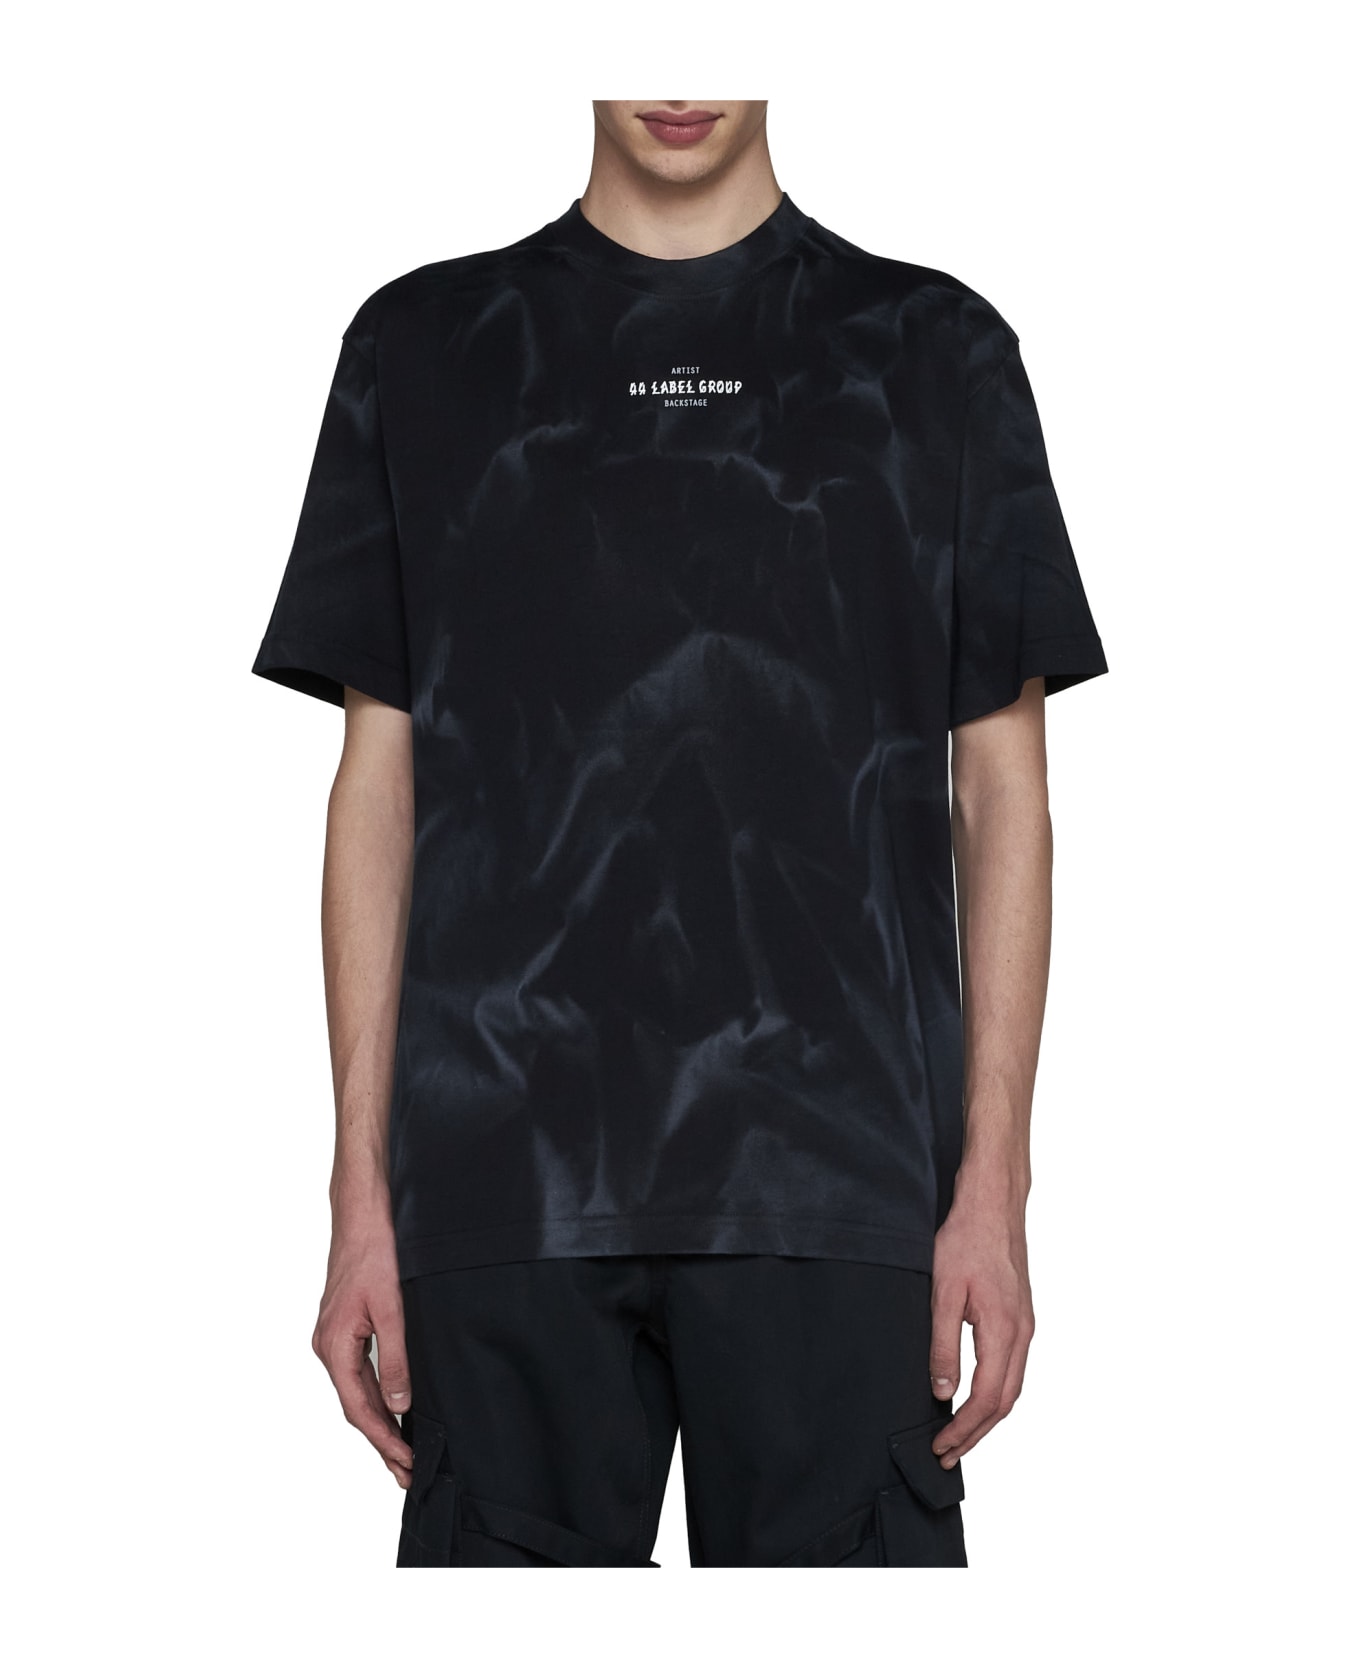 44 Label Group T-Shirt - Black+smoke effect+44 smoke シャツ